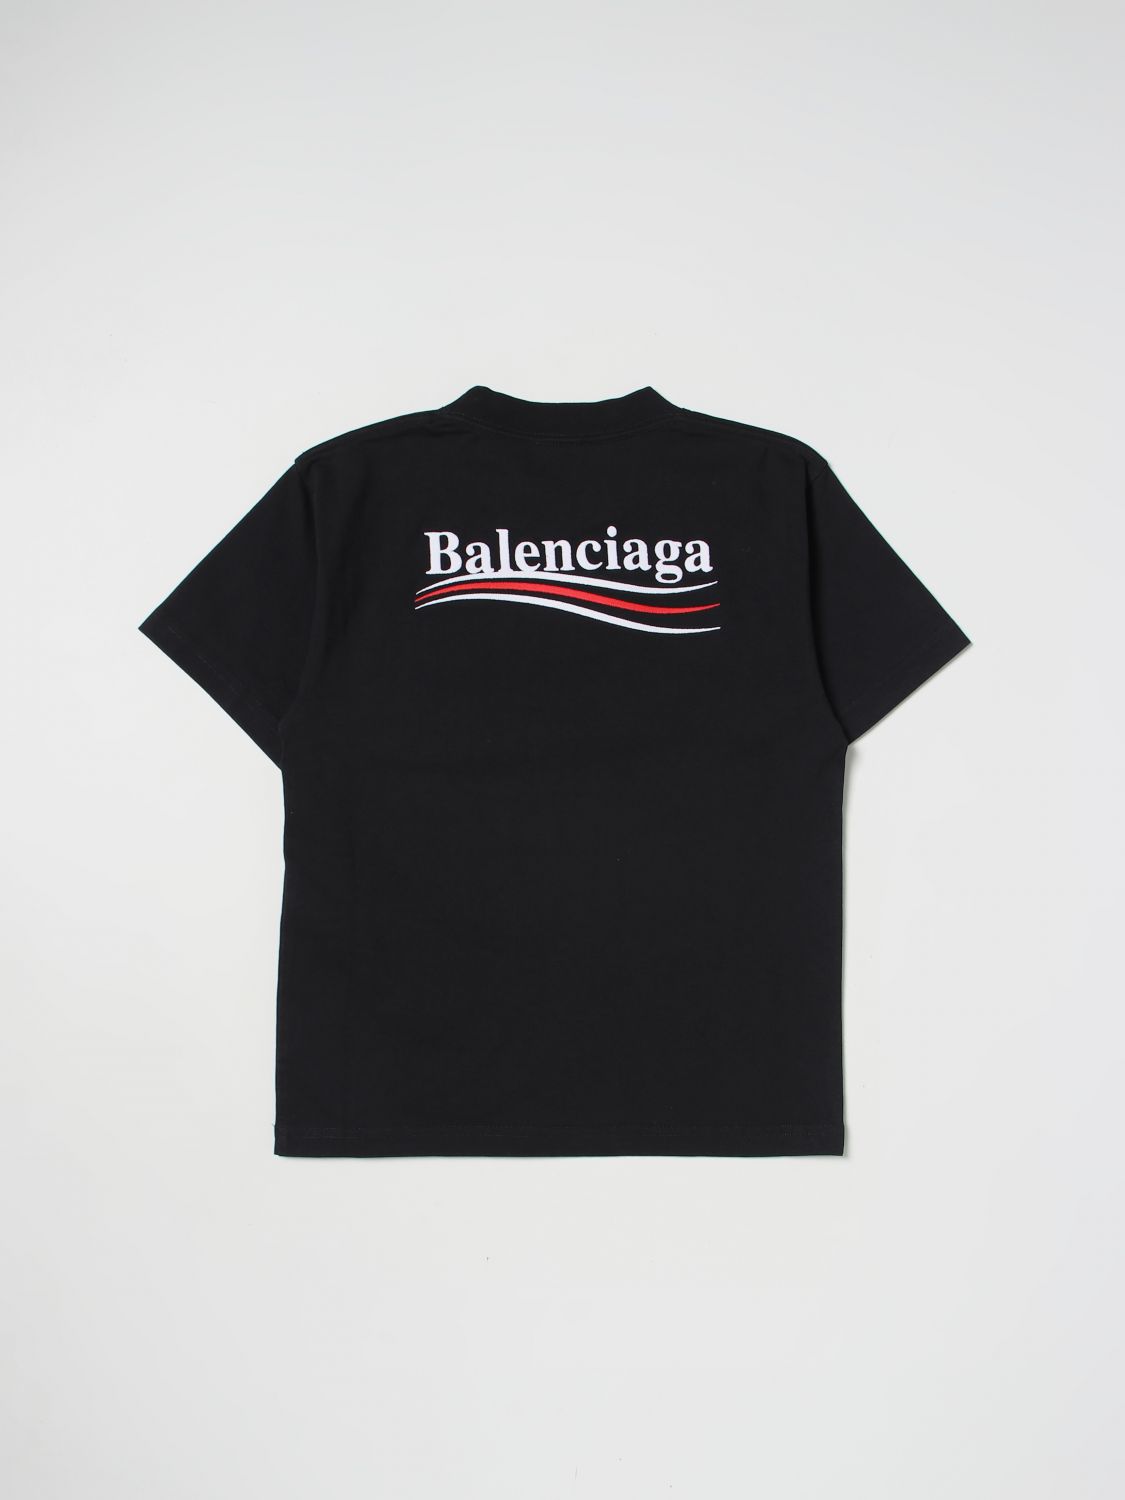 Tshirt Balenciaga Grey size L International in Cotton  23134146